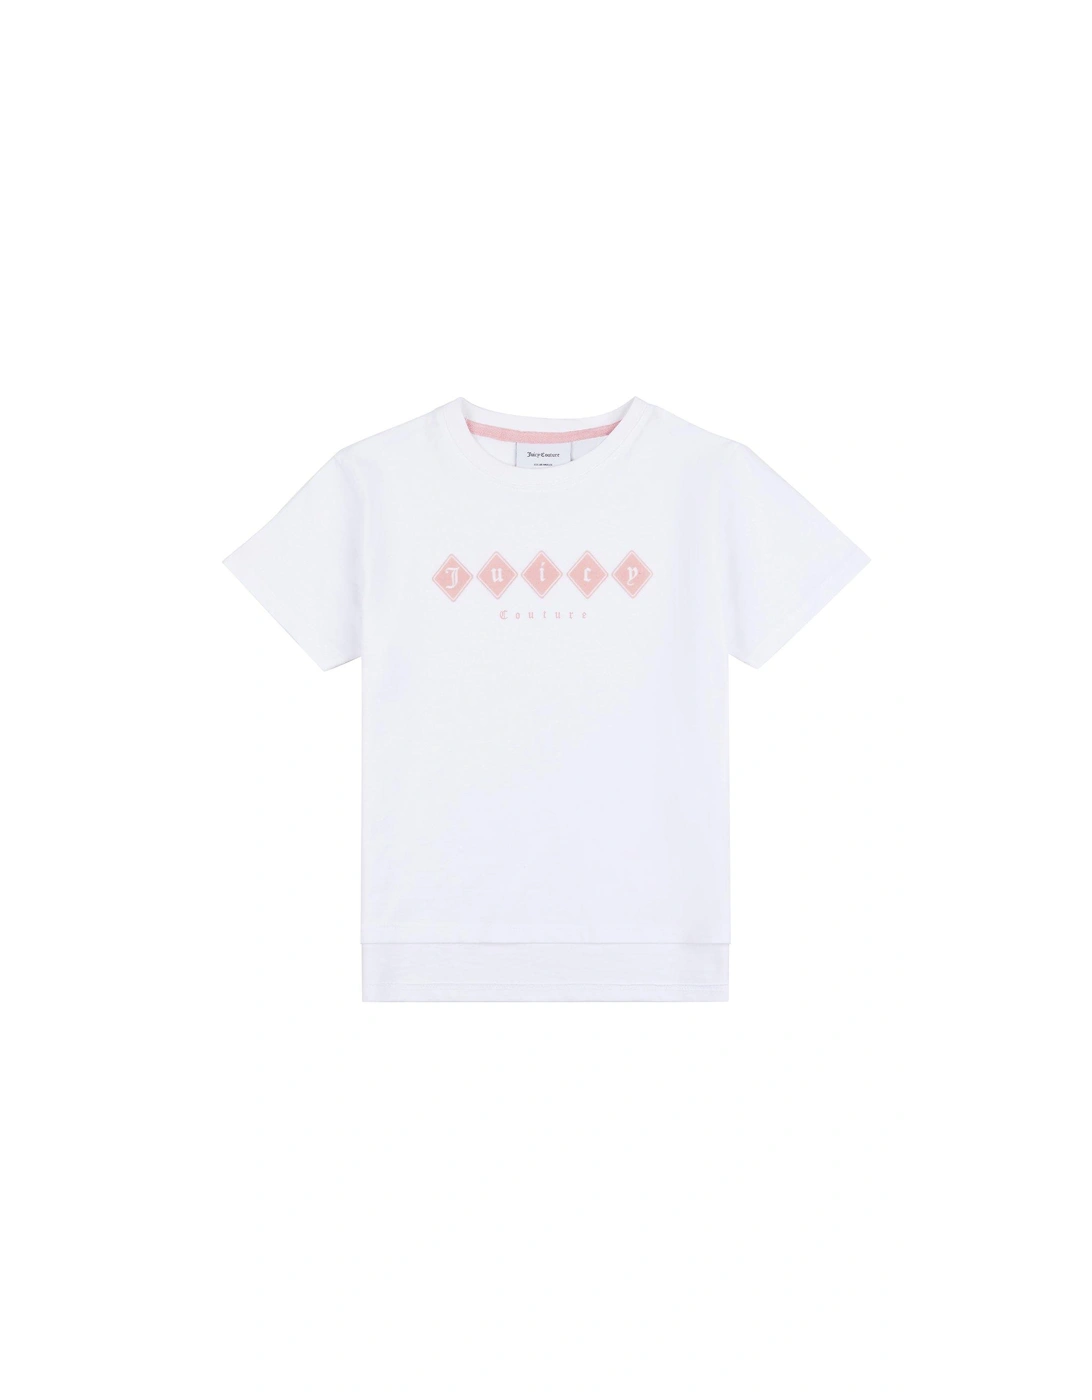 Girls Tonal Short Sleeve T-shirt - Bright White, 4 of 3